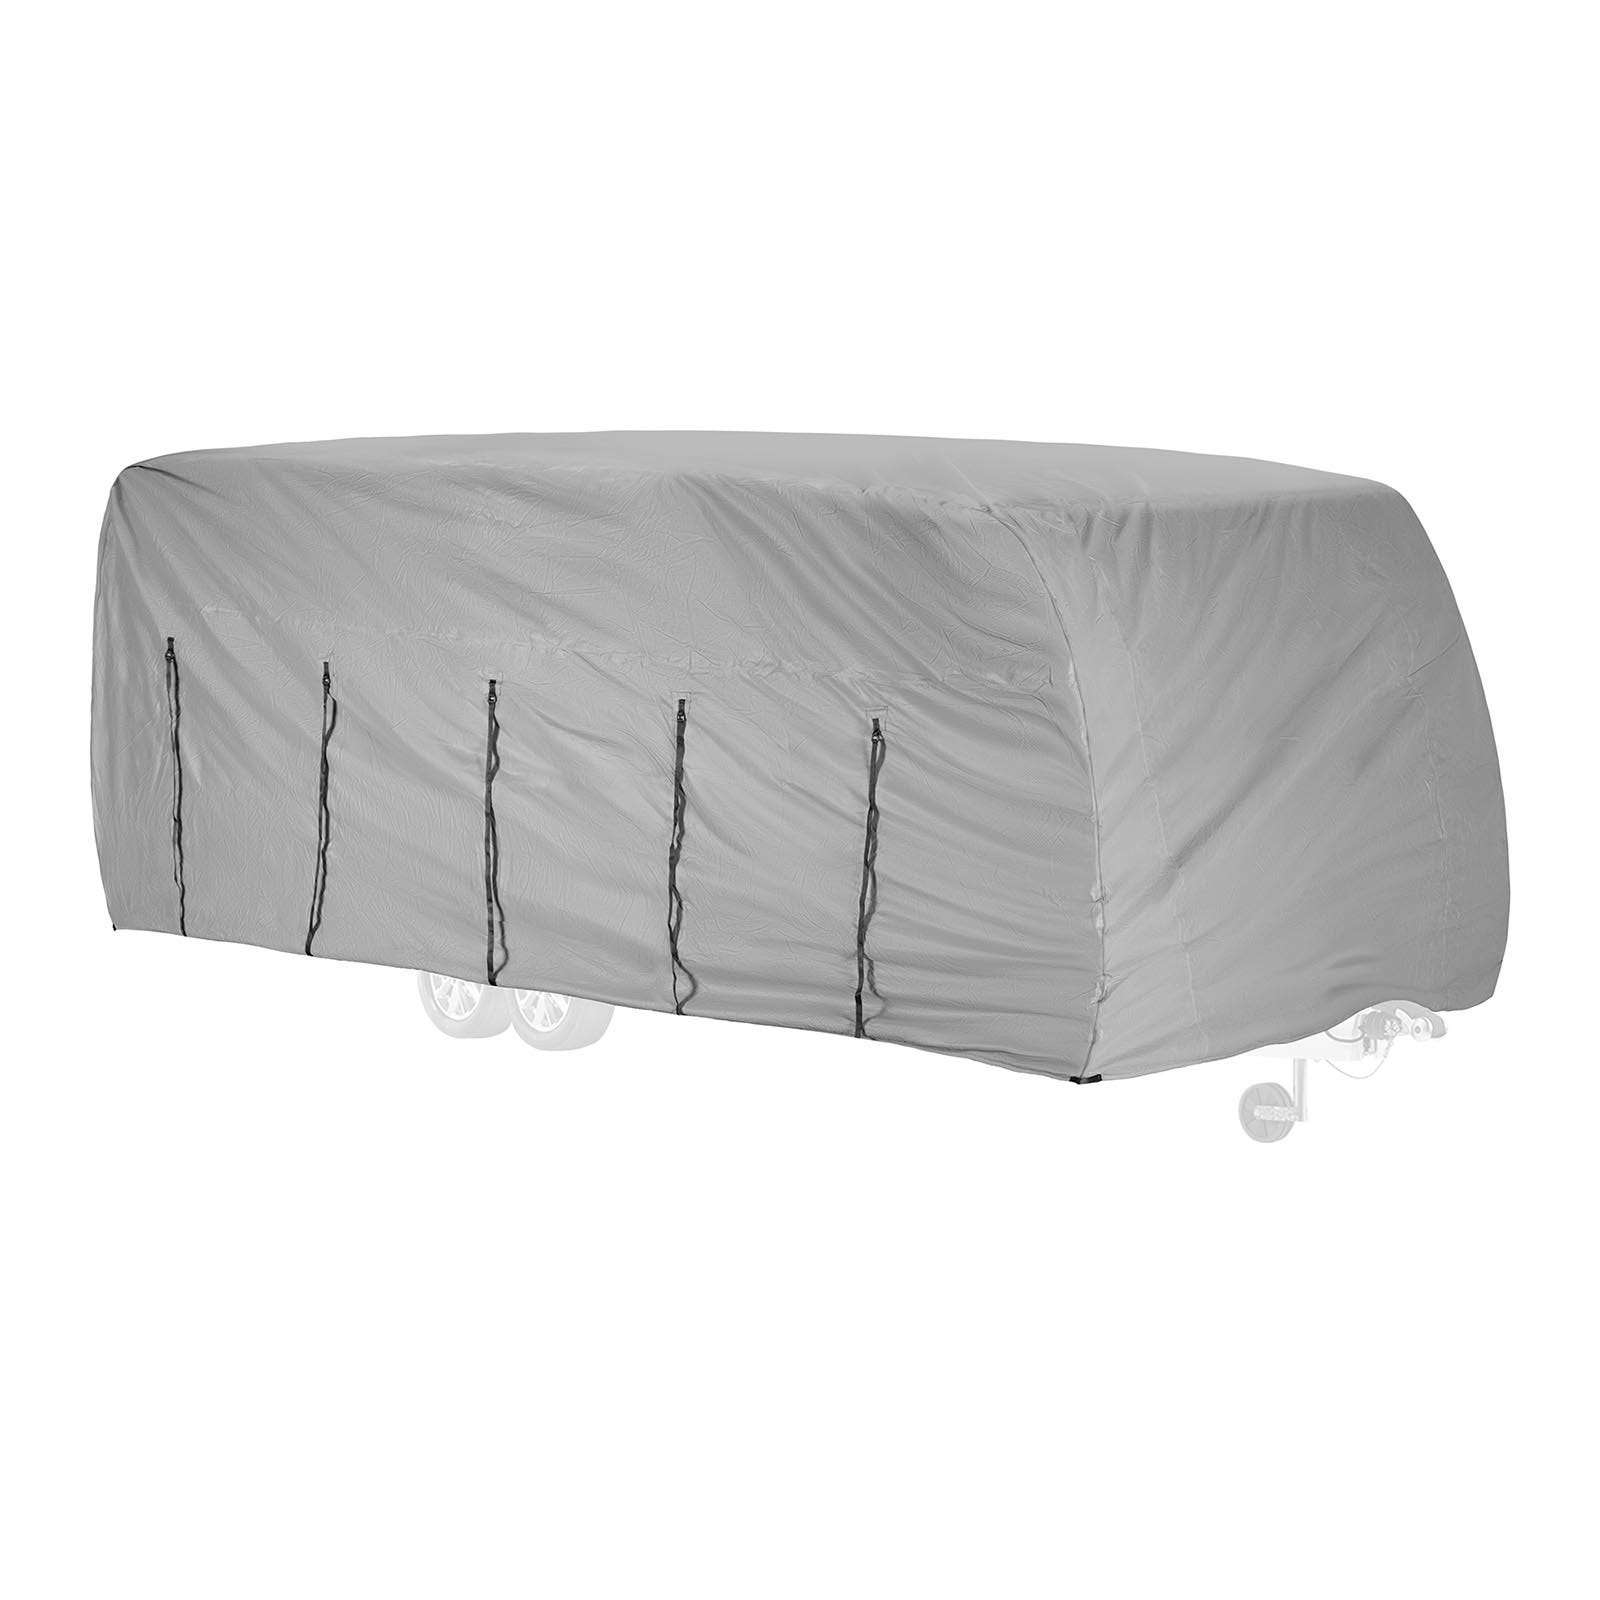 WRAPPYBAG® Housse de Protection en Plastique pour Matelas - 160x200 cm -  Ideal pour déménagement